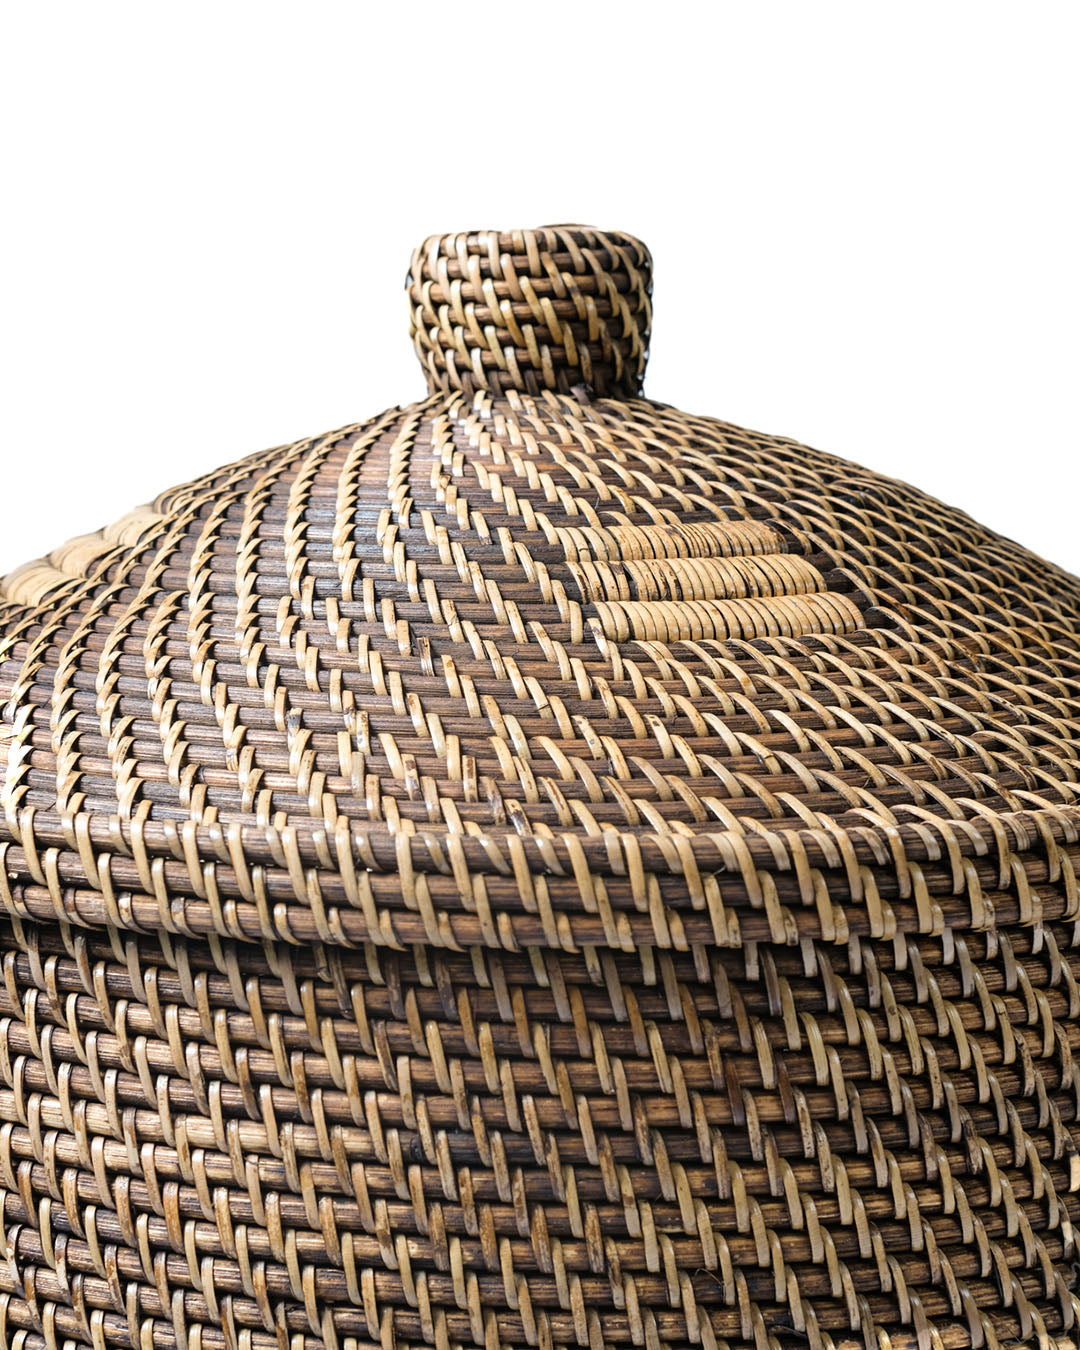 Cesto de ratán 100% natural Sumba decorativo con asas y tapa, hecho a mano con acabado natural de forma cilindrica, trenzado a mano con dibujos diferentes, 52 cm de altura con 40 cm de diámetro, fabricado en Indonesia